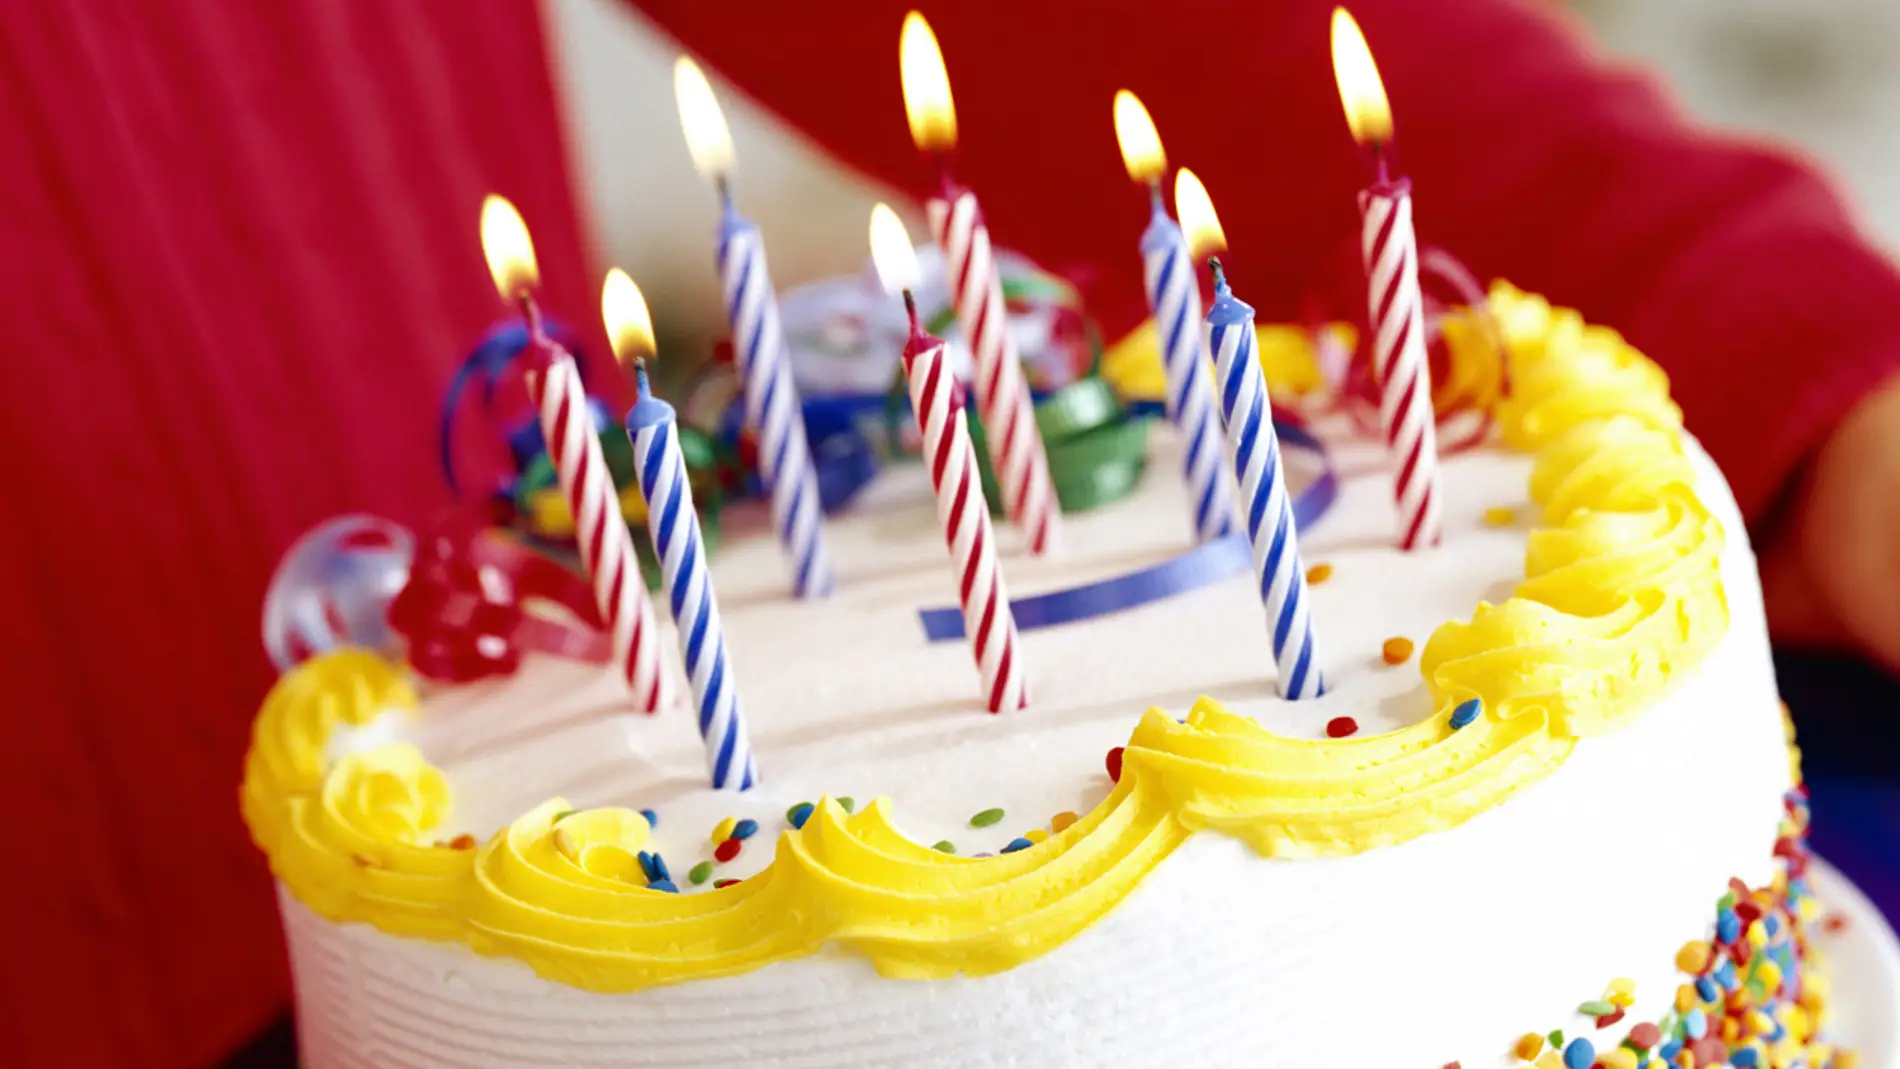 Por qué no deberías soplar las velas de tu cumpleaños más de una